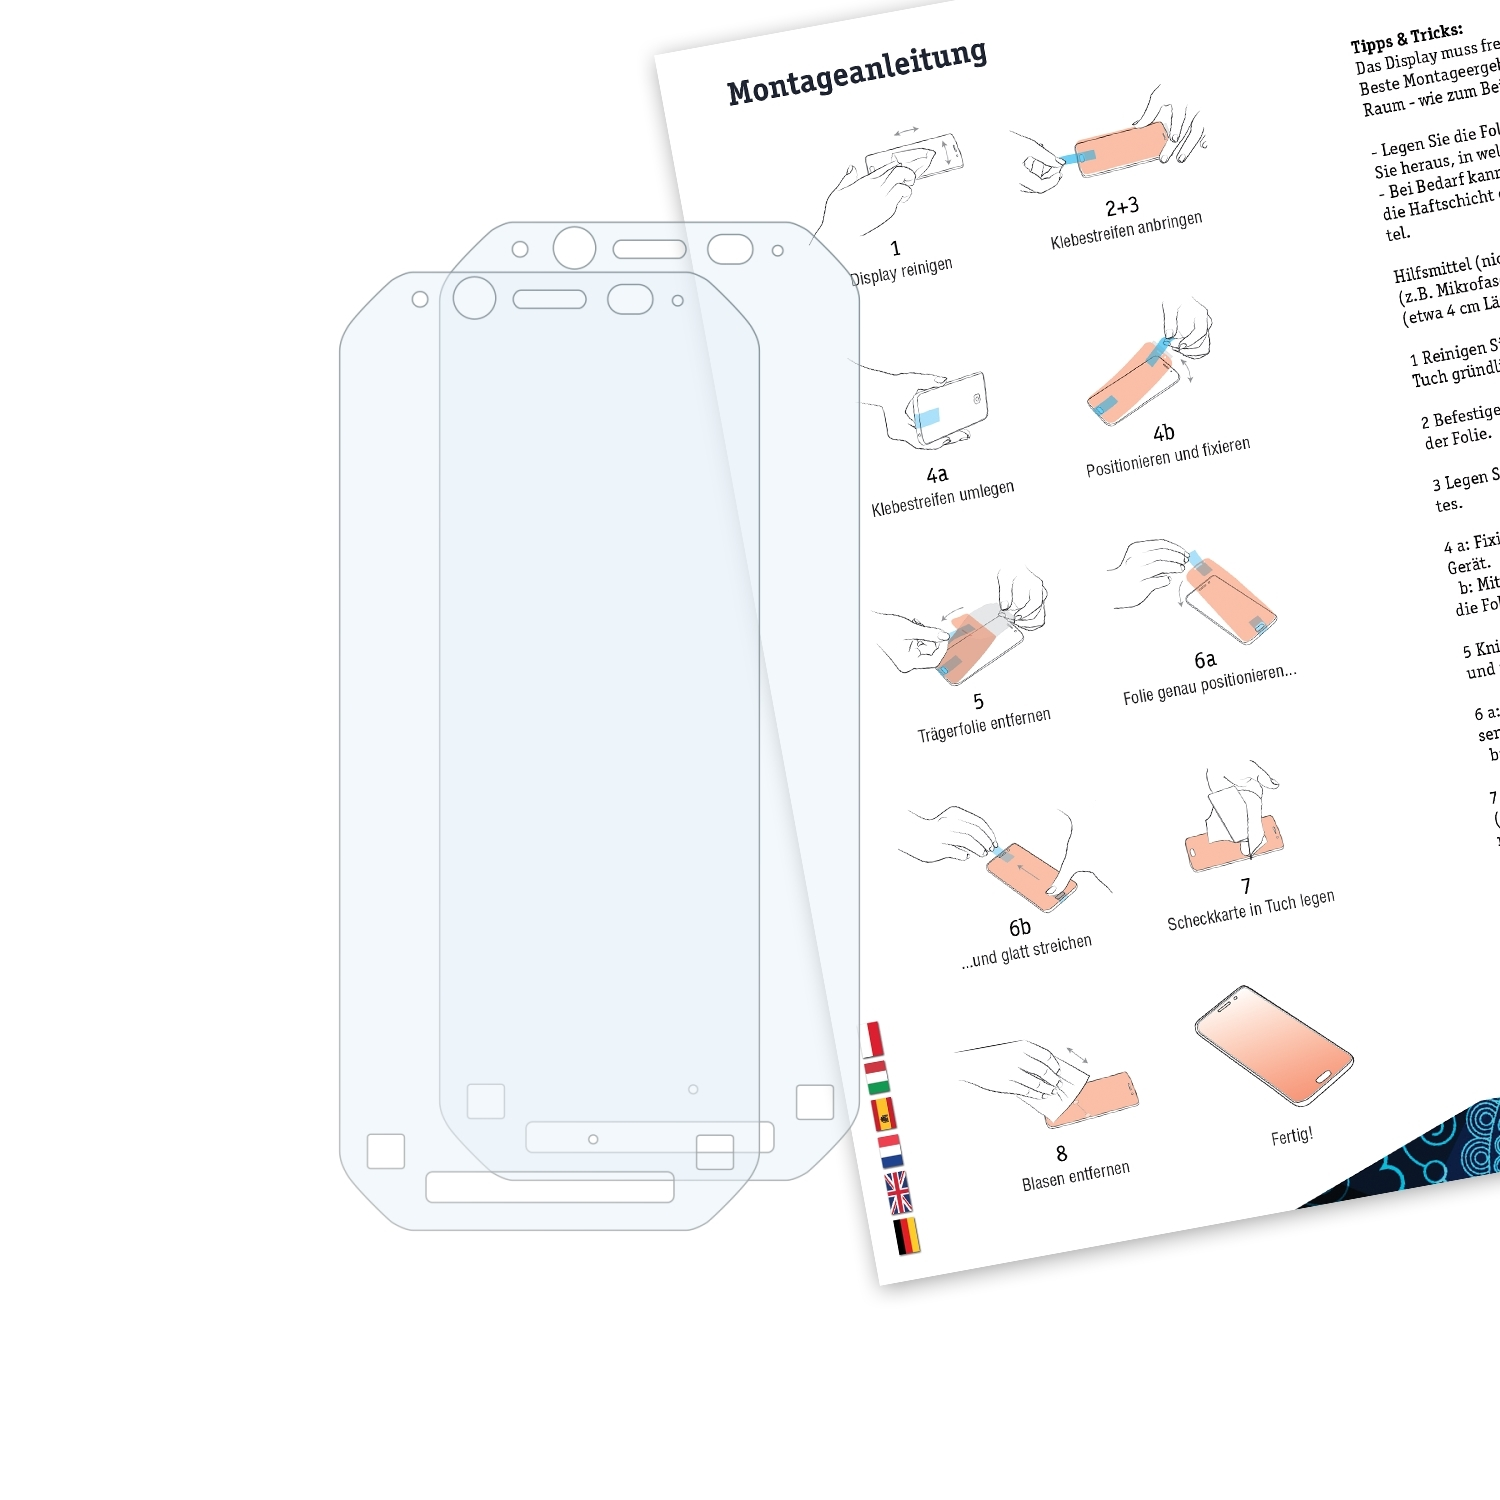 BRUNI 2x Panasonic Schutzfolie(für FZ-N1) Basics-Clear Toughbook